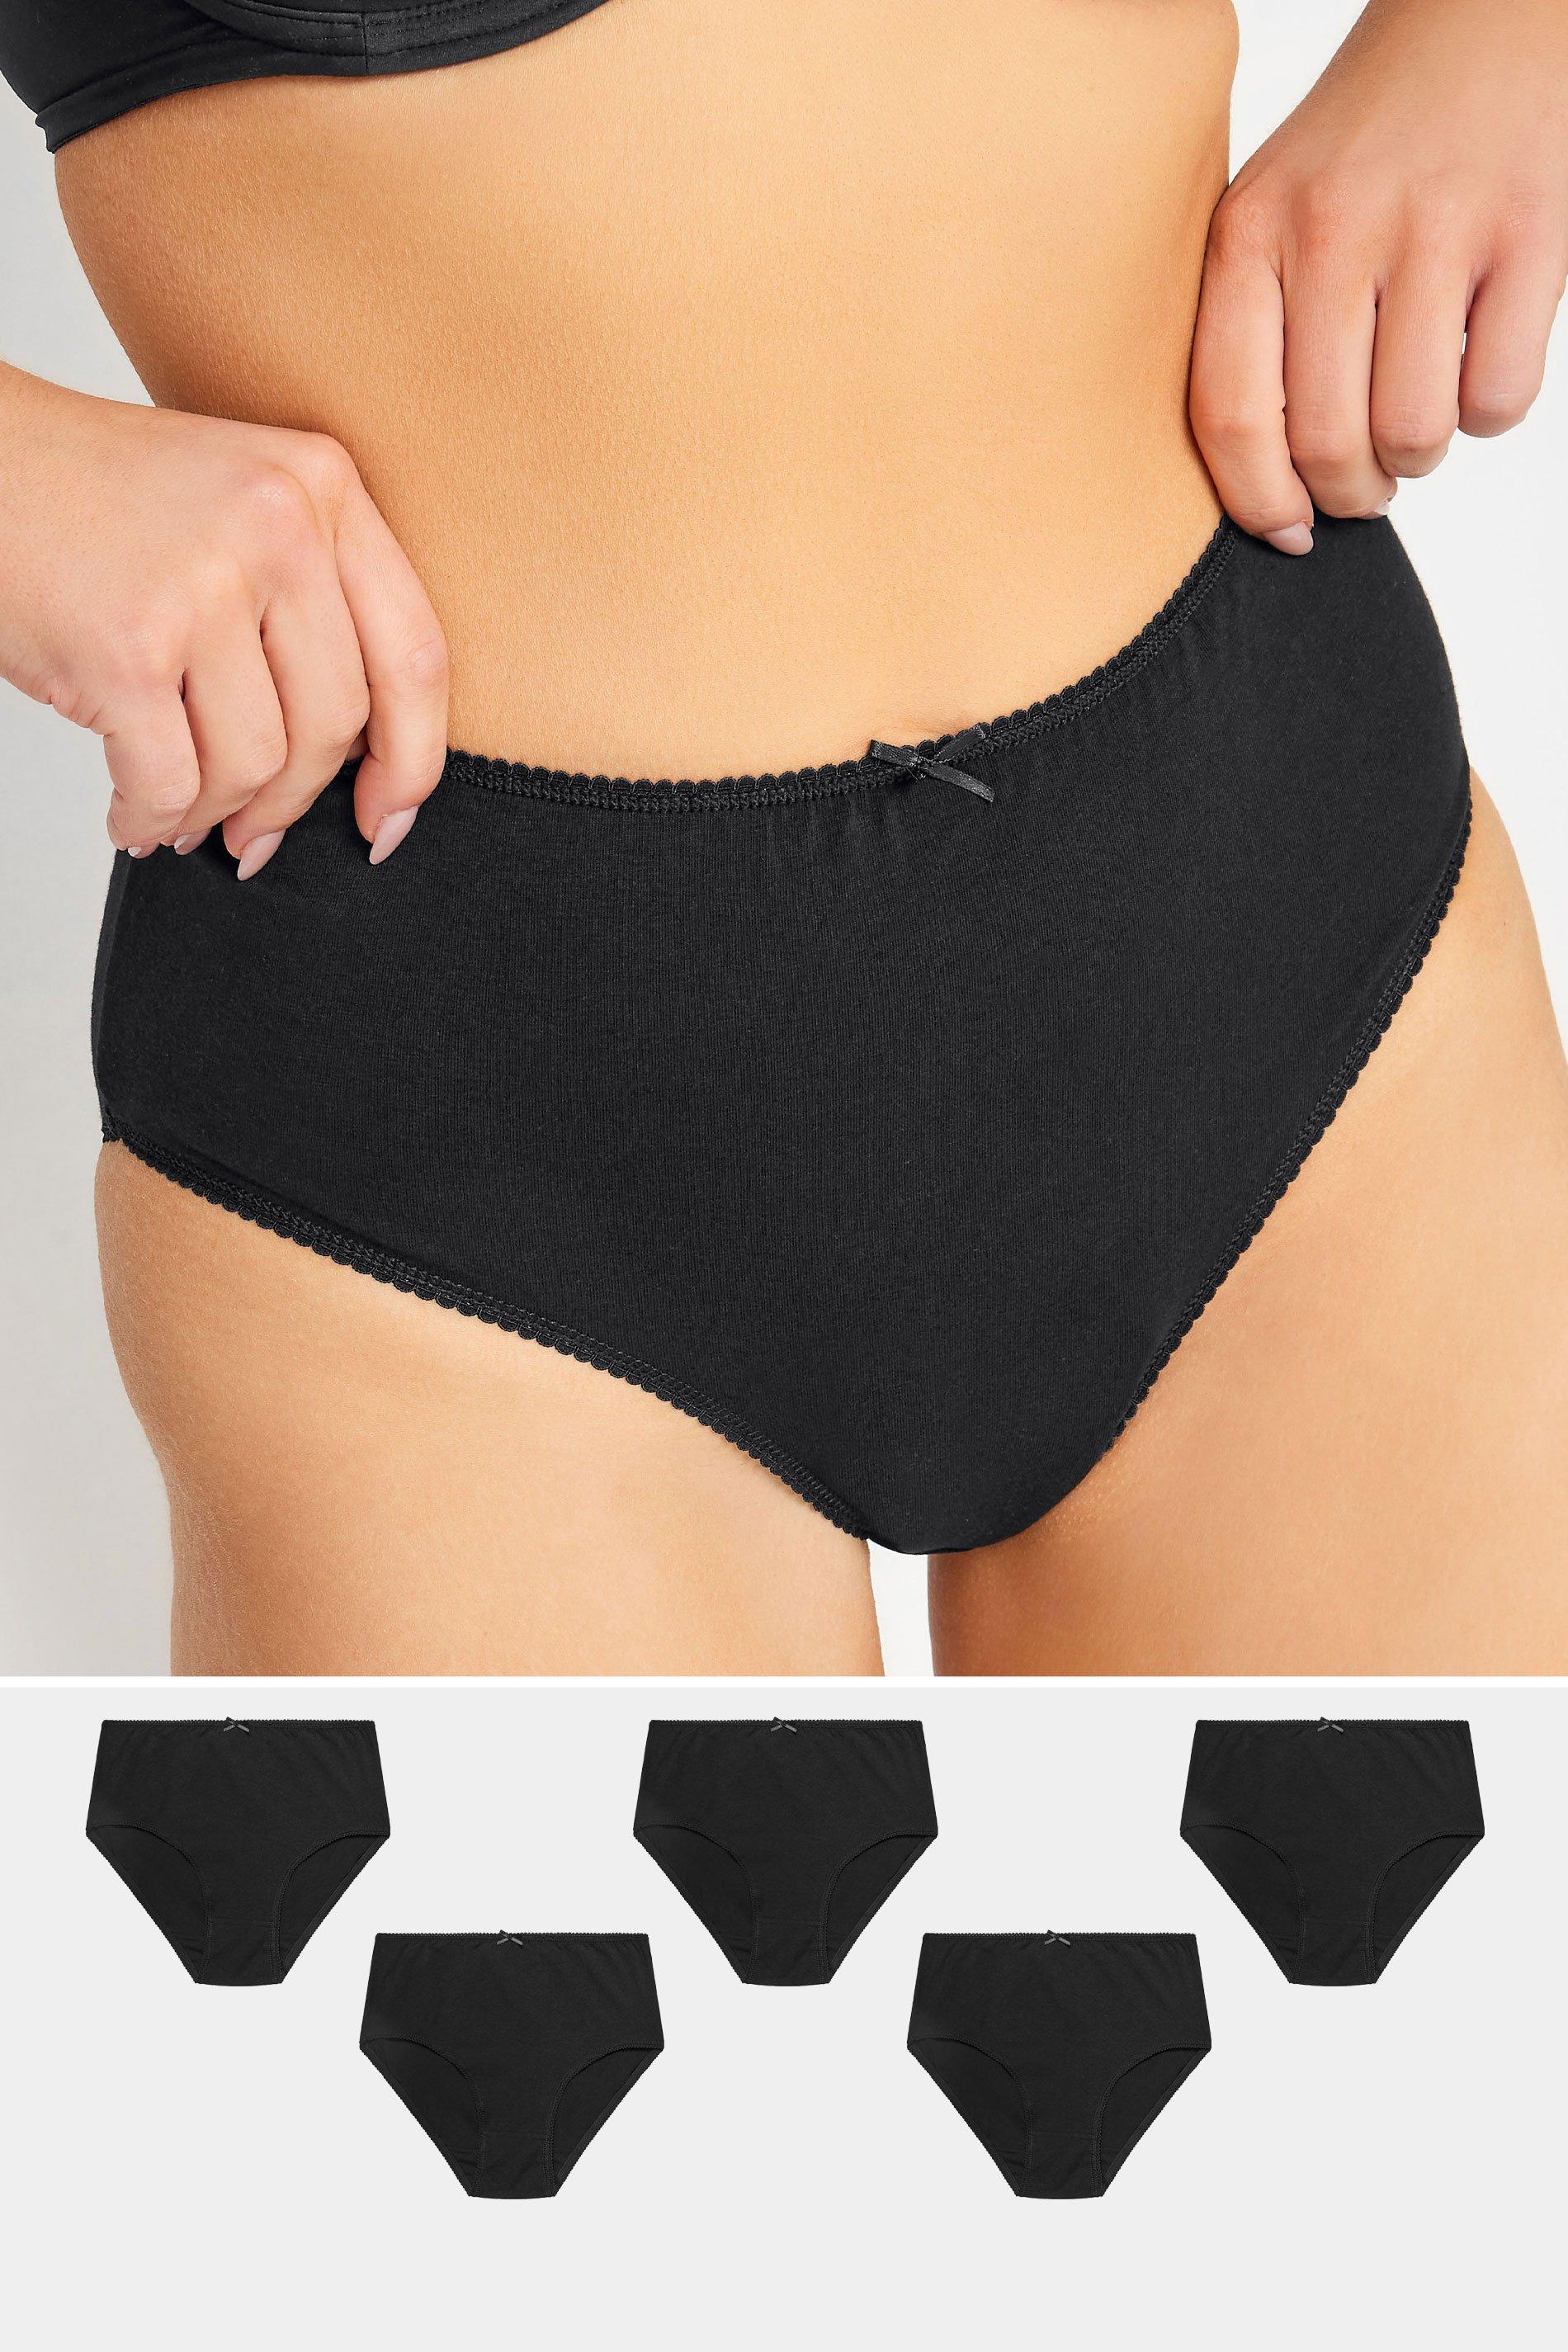 Lingerie, Women's Underwear